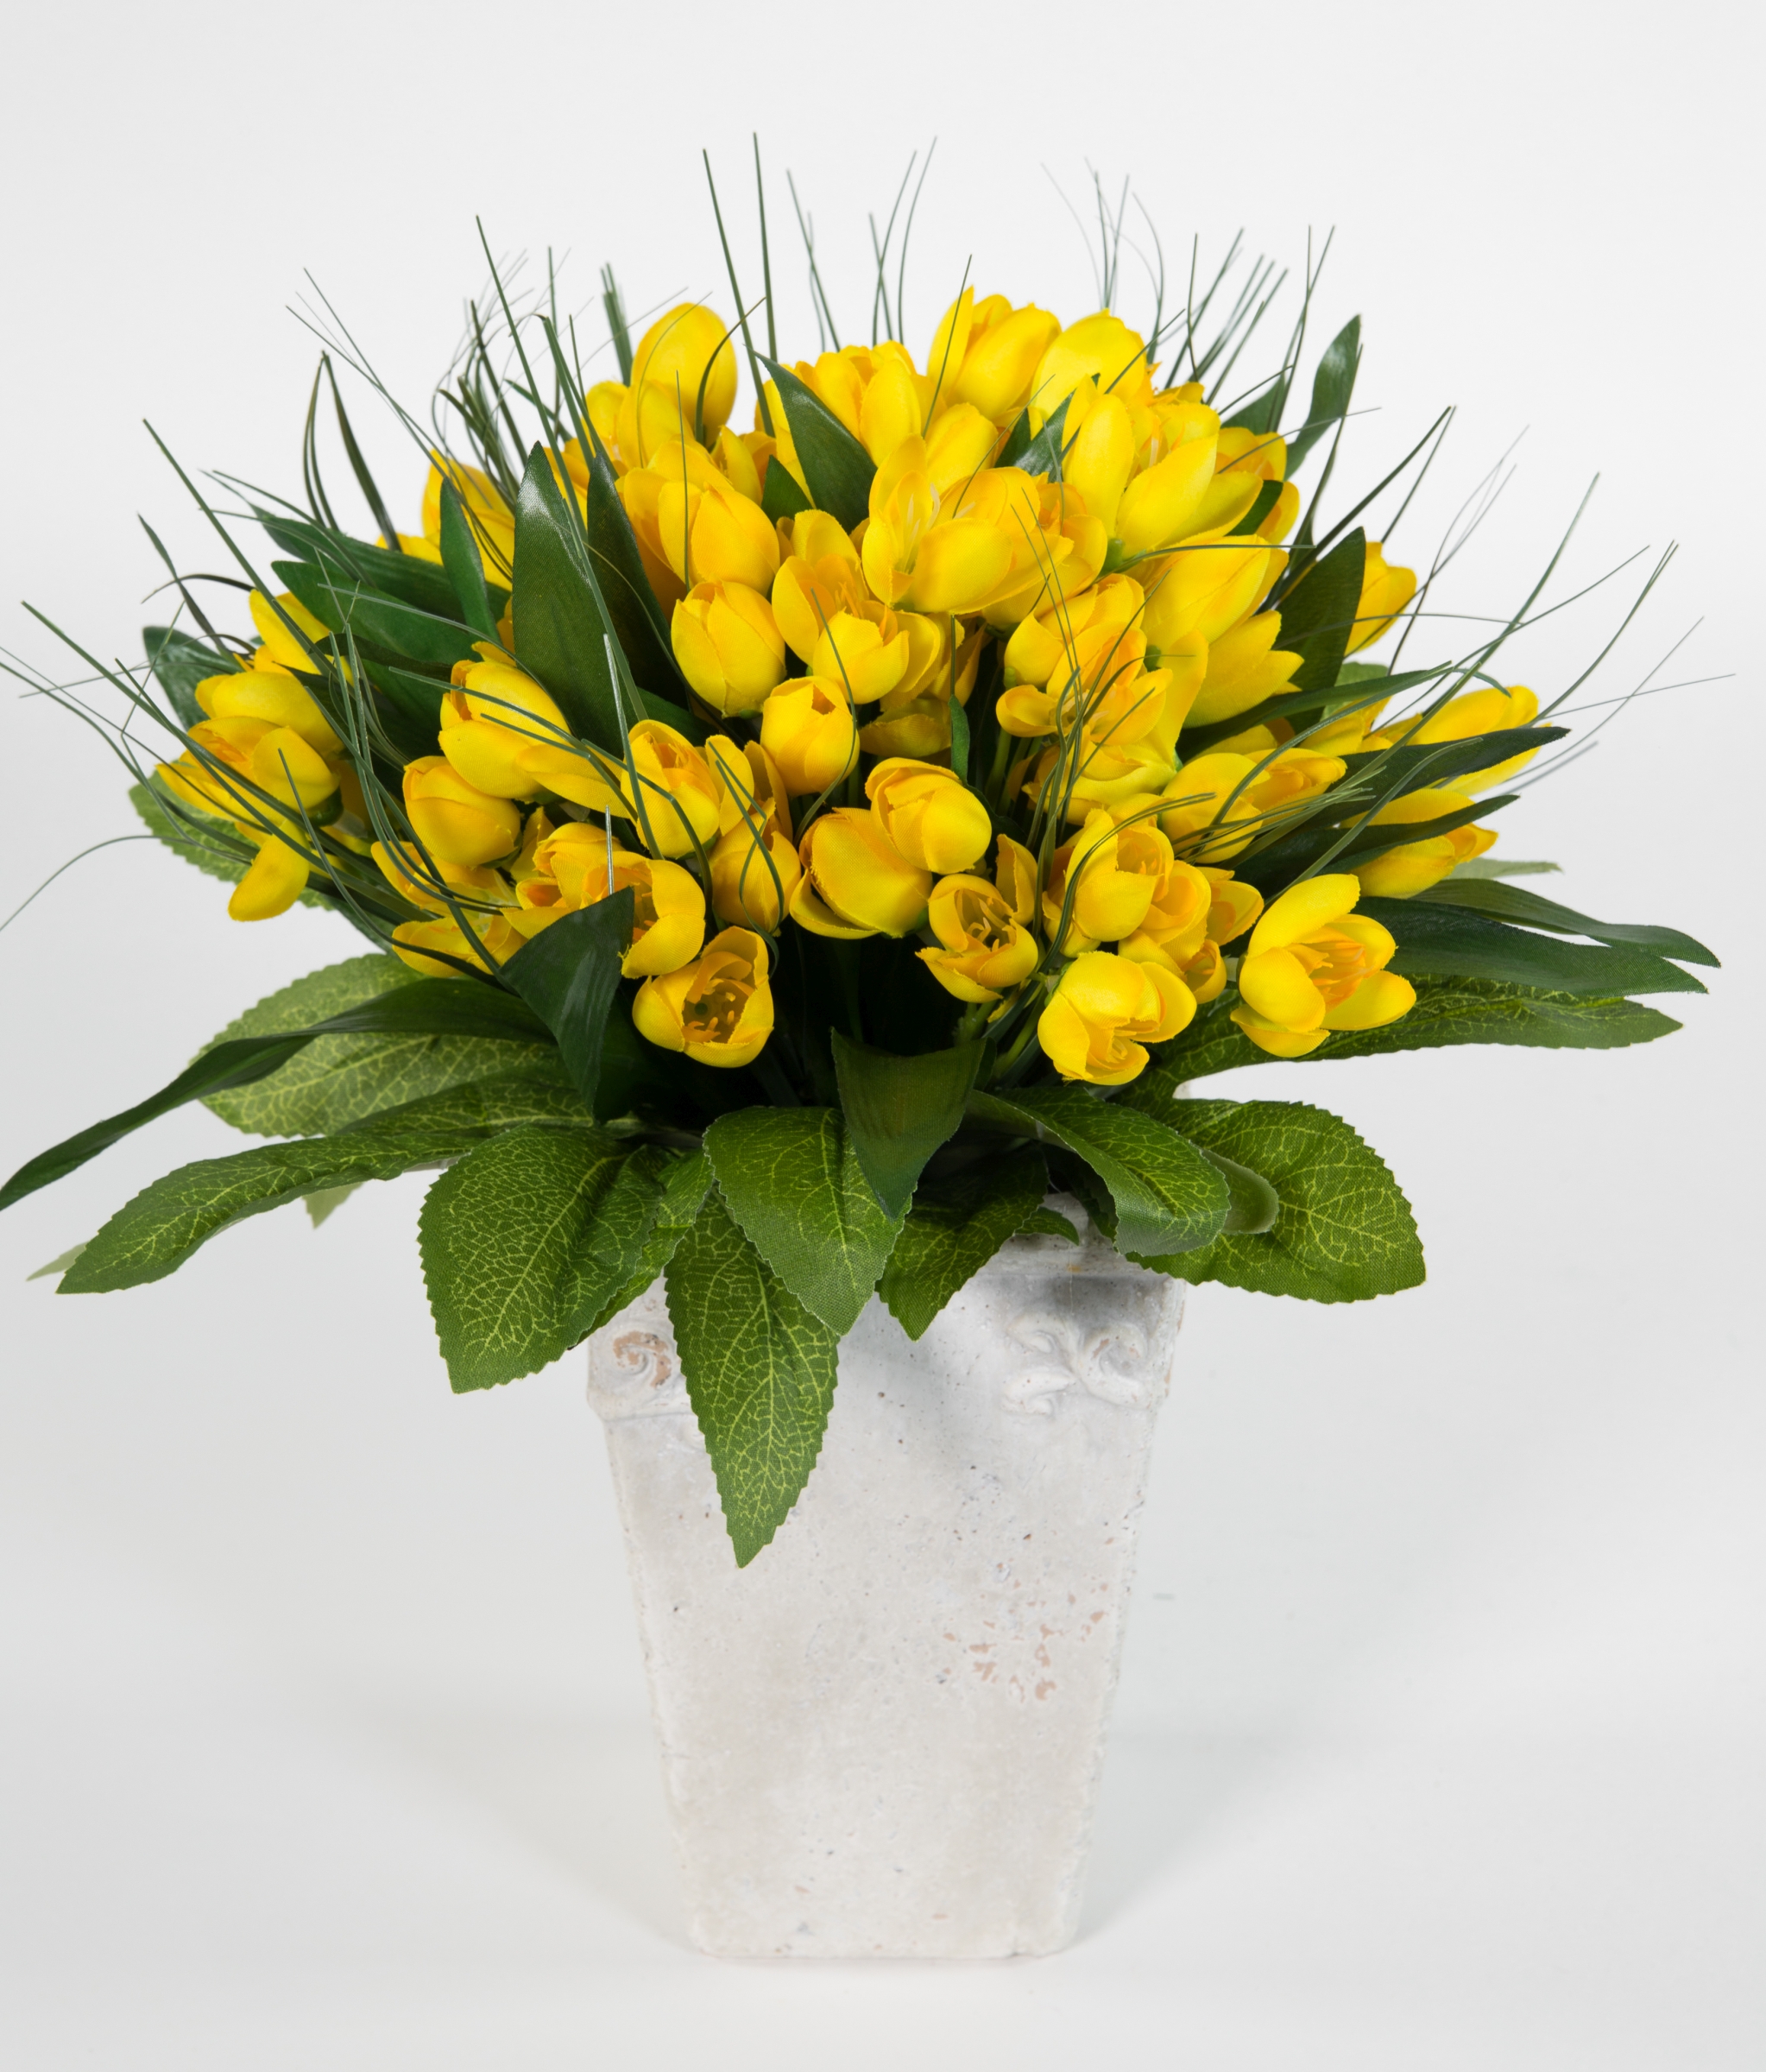 Krokusstrauß 32x30cm gelb Frühlingsstrauß Kunstblumen künstlicher handgebundener Strauß Blumenstrauß